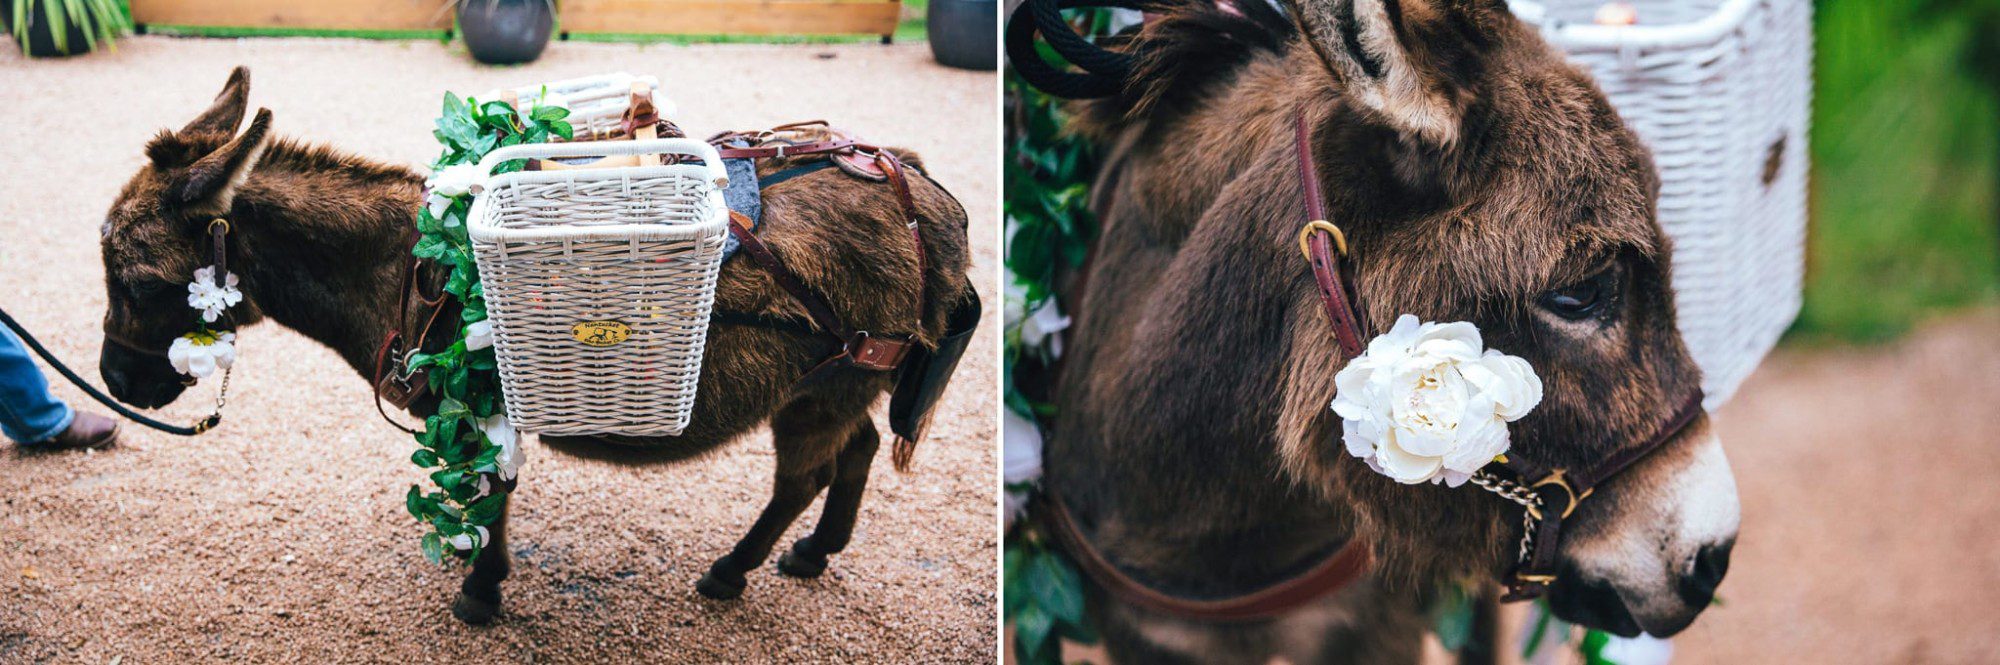 donkeys with baskets on saddle